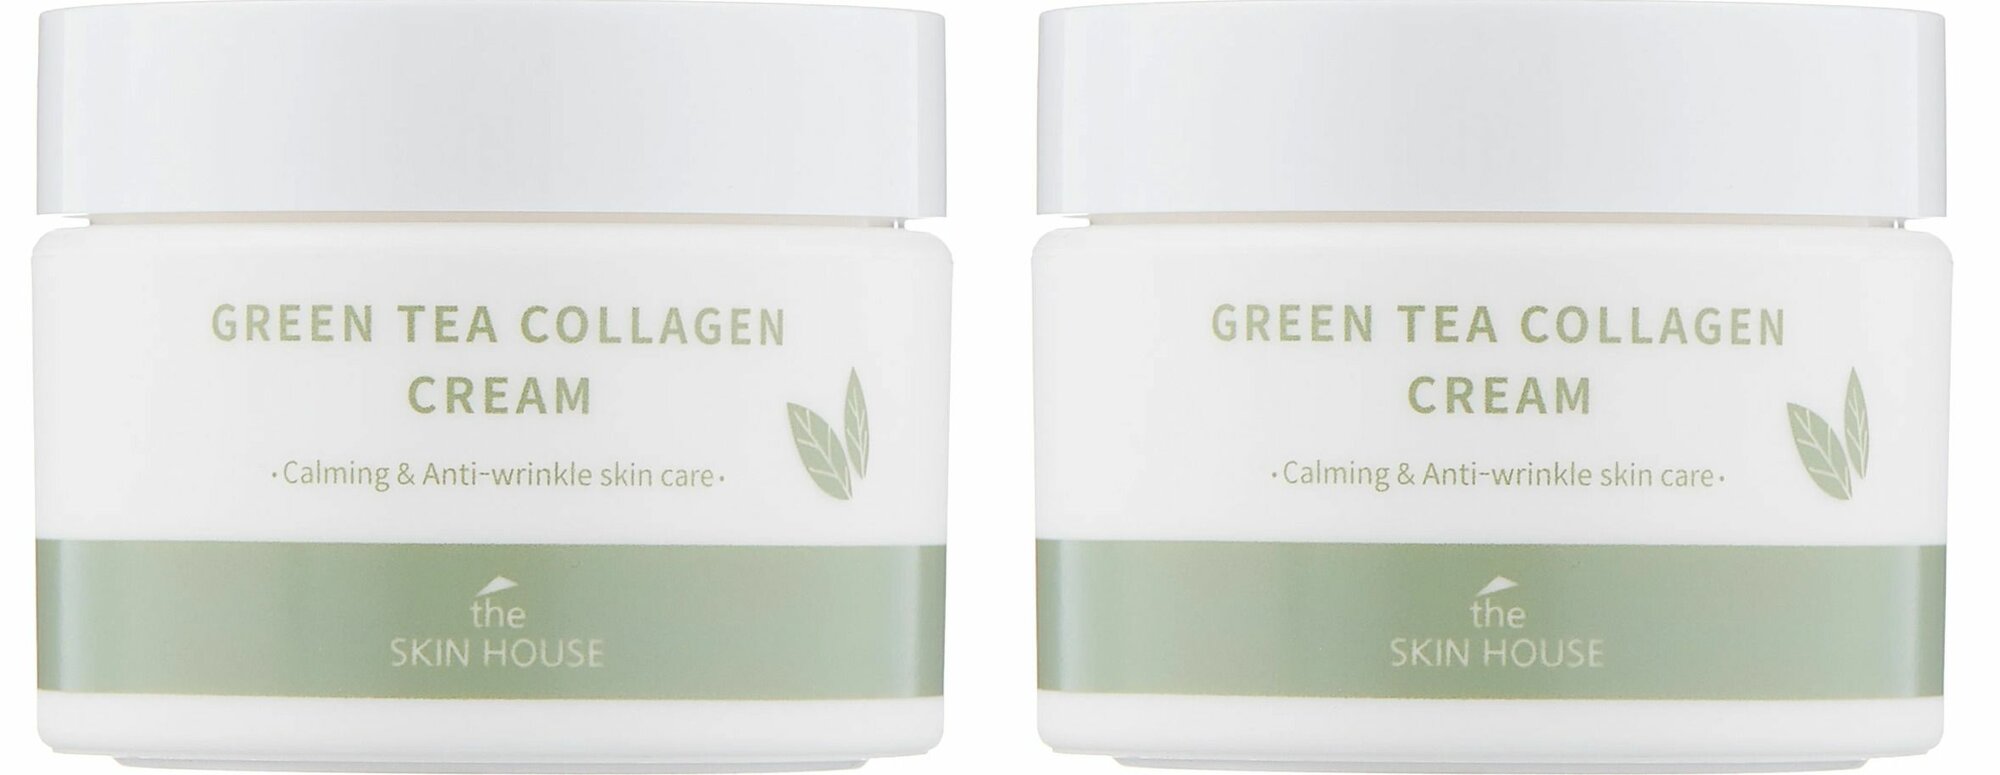 THE SKIN HOUSE Крем для лица с коллагеном и экстрактом зеленого чая GreenTea Collagen Cream, 50 мл, 2 шт